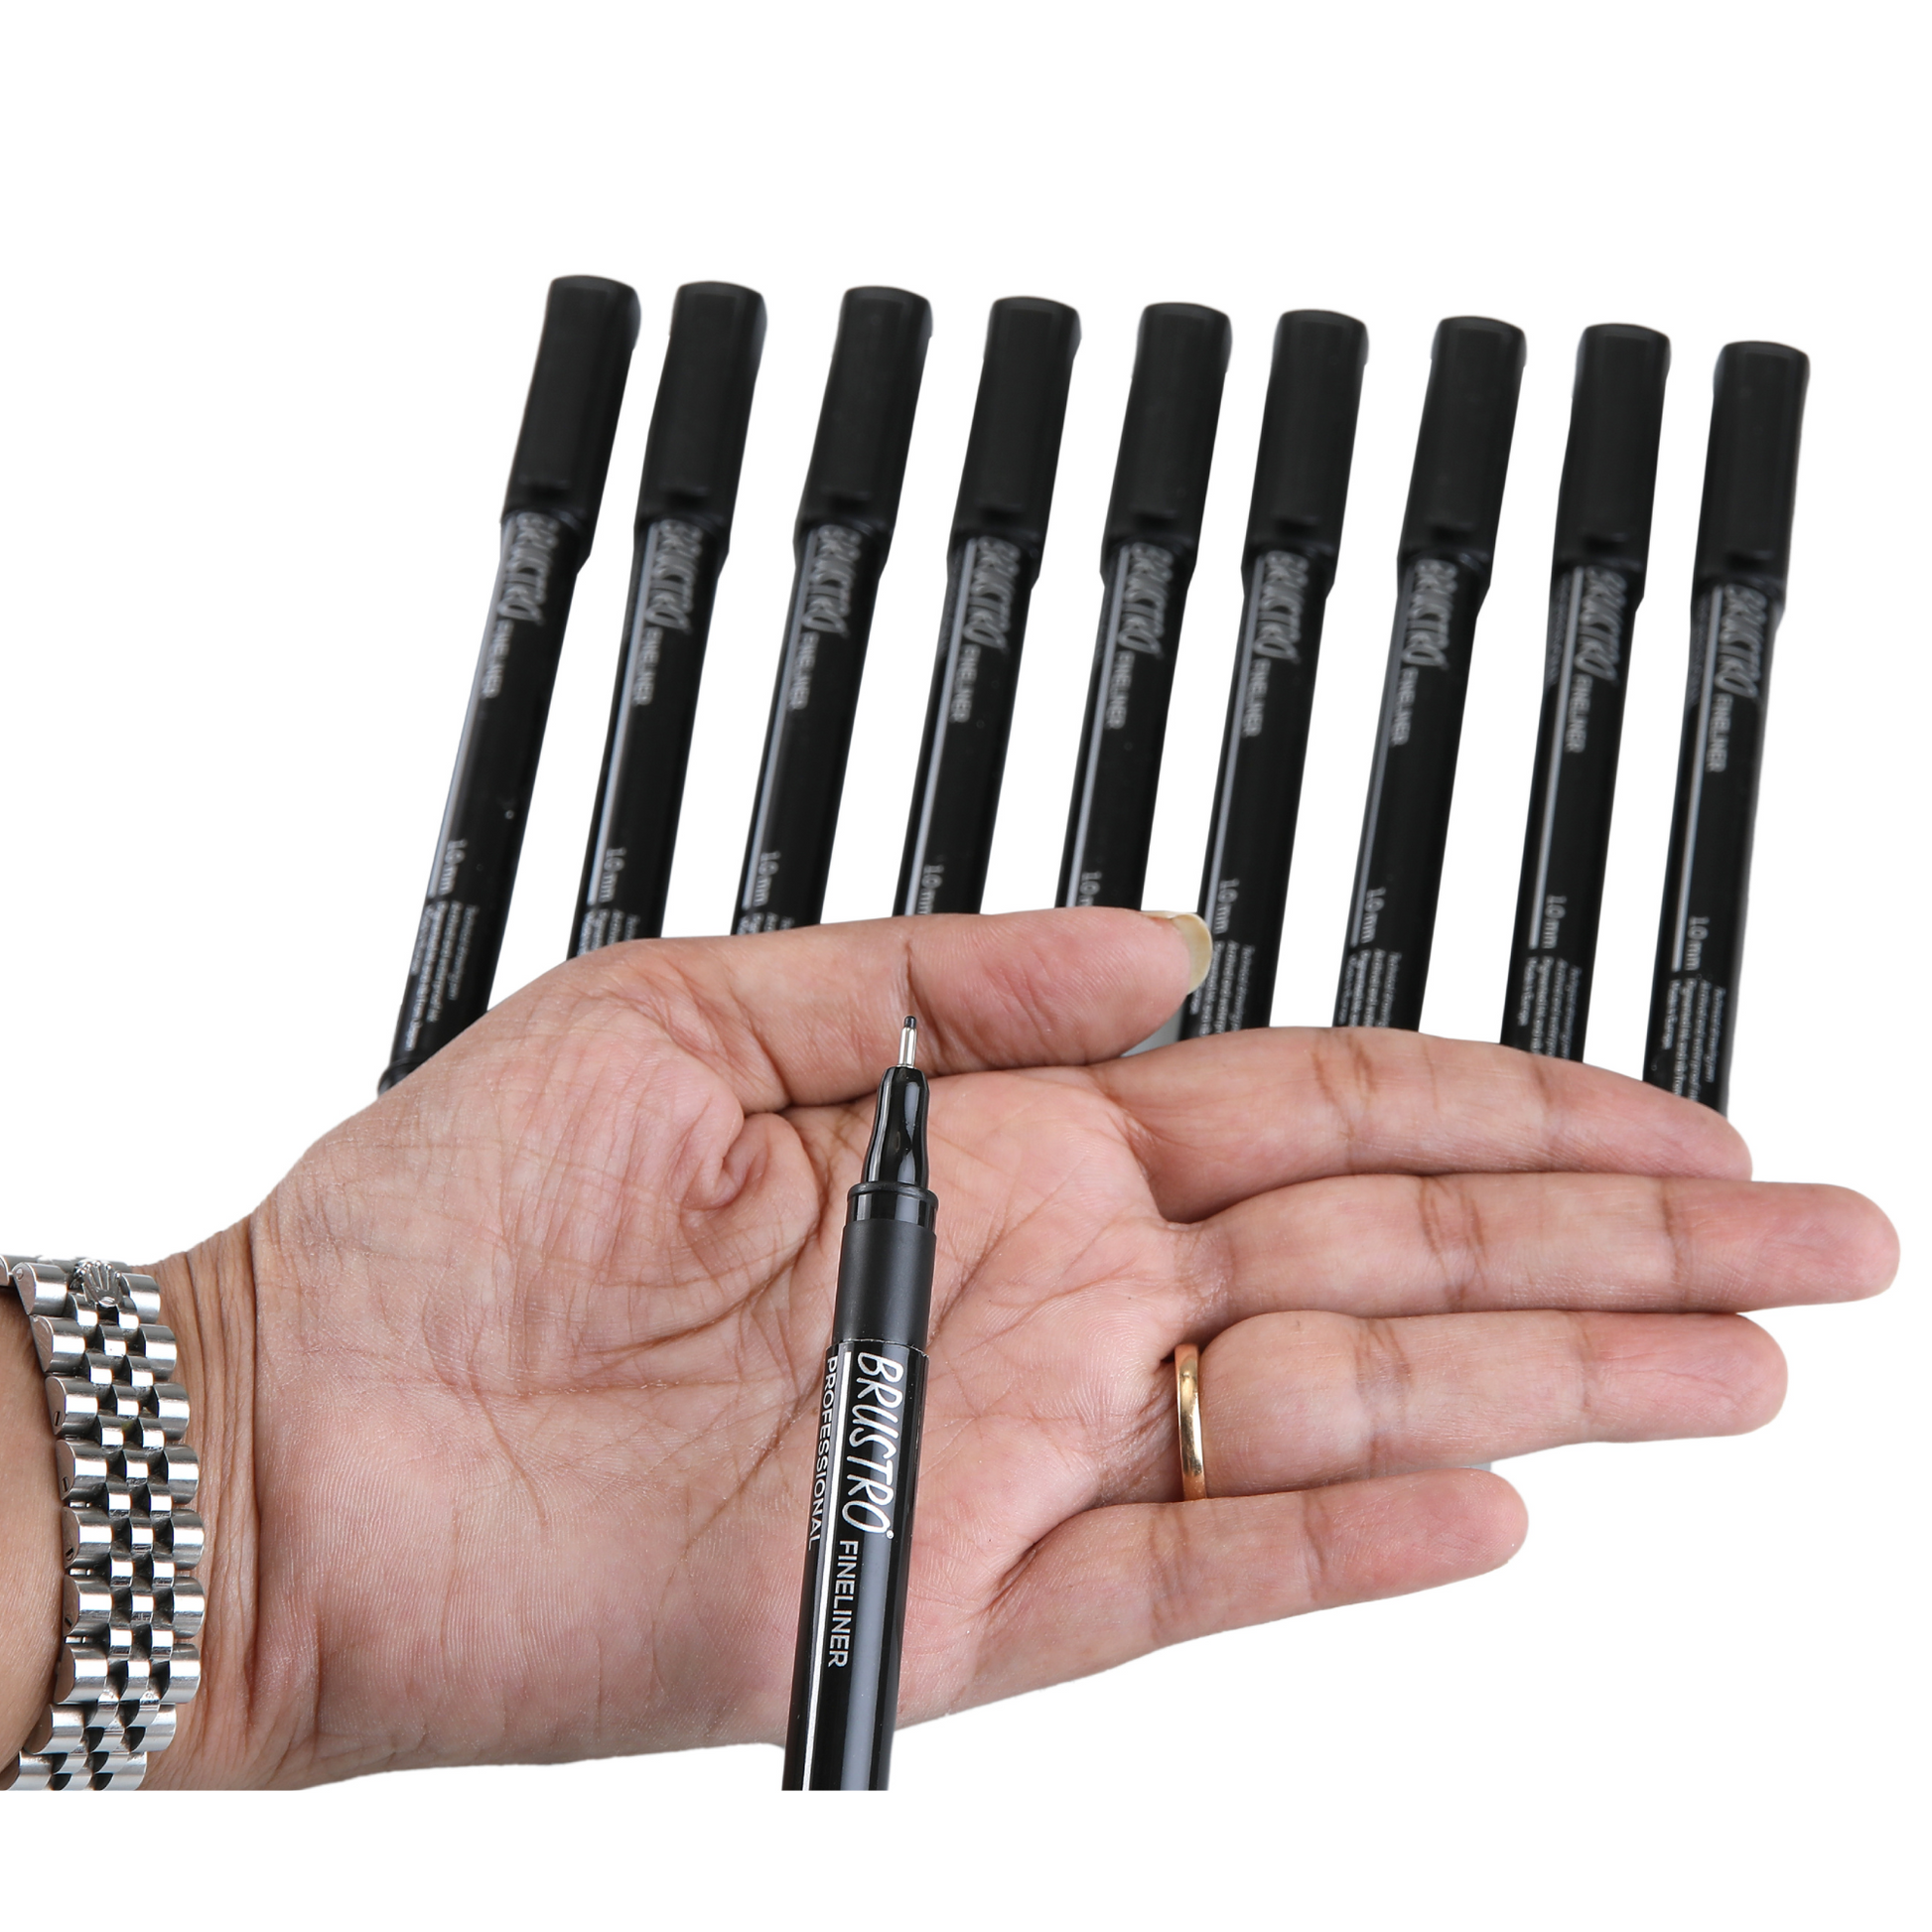 Brustro Technical Pen Black Assorted Set of 9 - Creative Hands